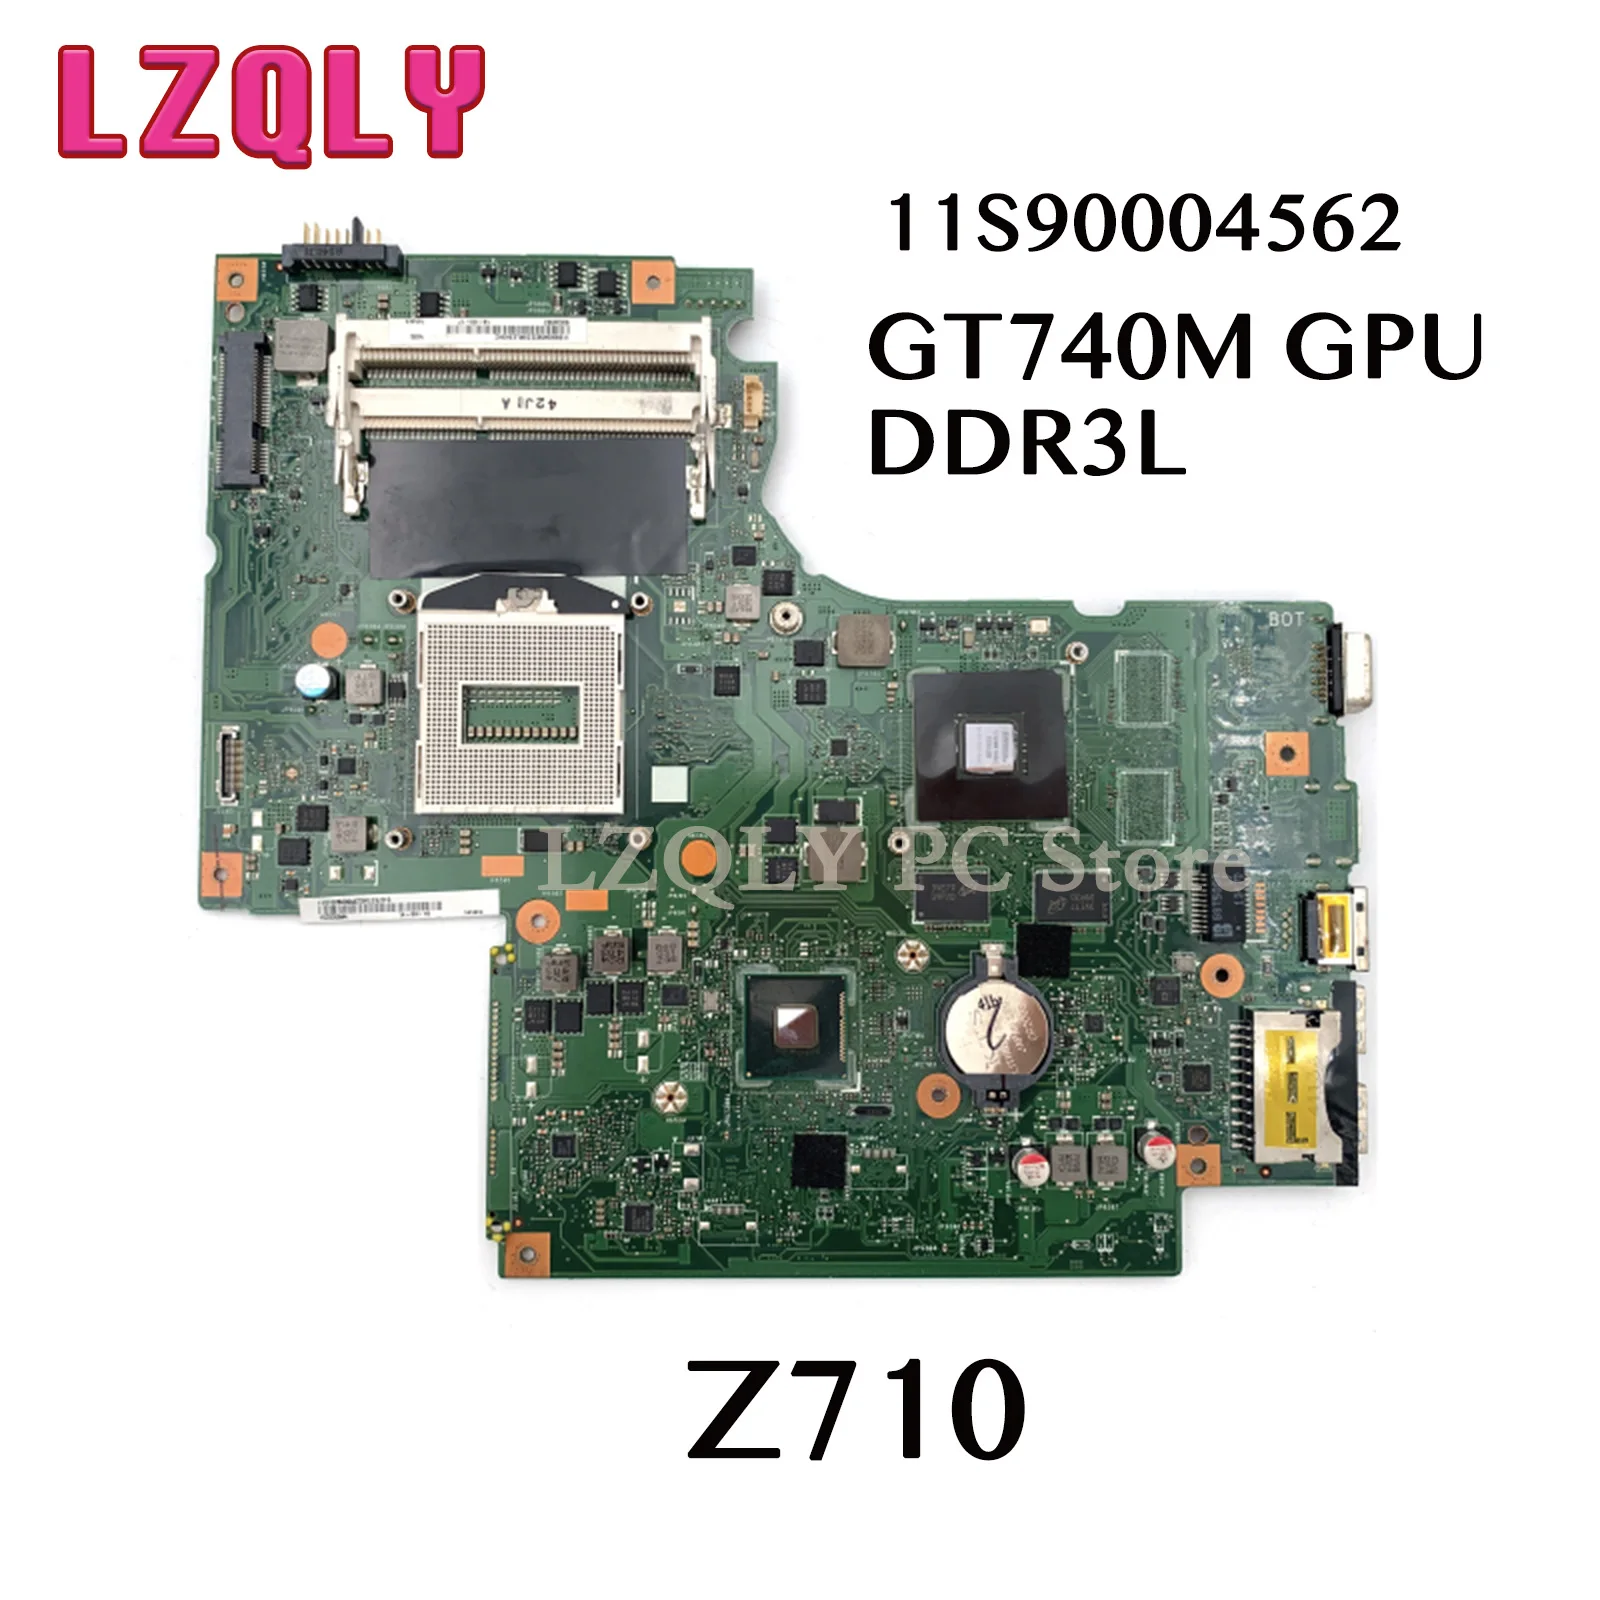 

LZQLY For Lenovo Ideapad Z710 DUMB02 Rev: 2.1 11S90004562 Laptop Motherboard GT740M GPU DDR3L MAIN BOARD Full Test